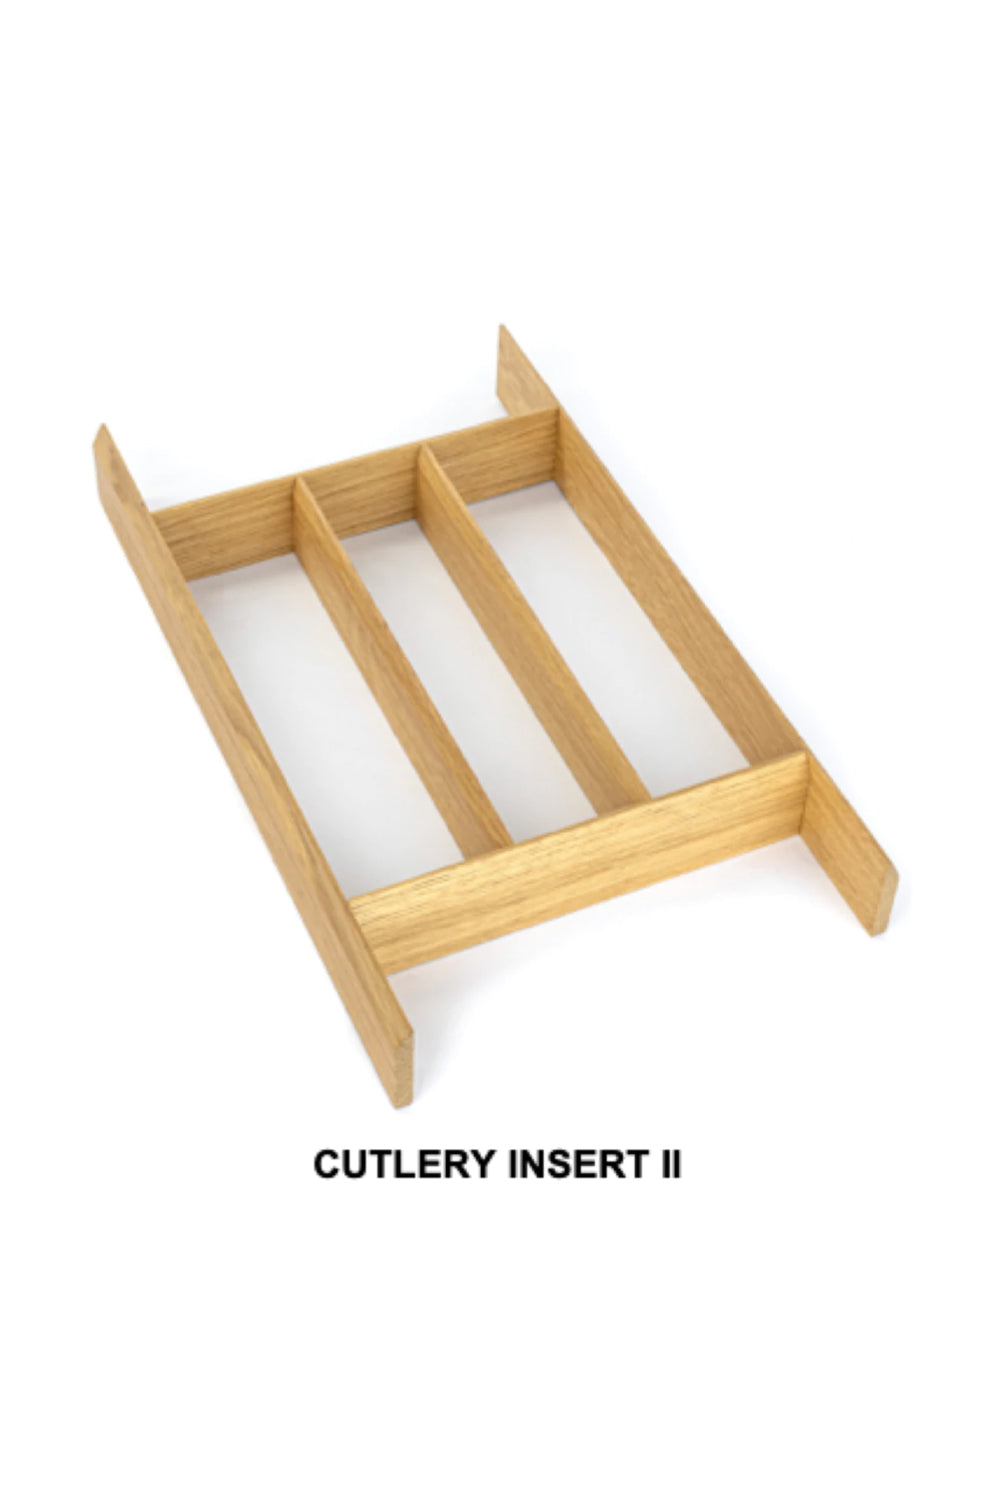 Cutlery Drawer Inserts for Kitchen in Oak | Made in Germany | 德國製 橡木刀叉盤 | 柜桶 | 刀叉盤 | 抽屜分隔整理 | 家居收納 |